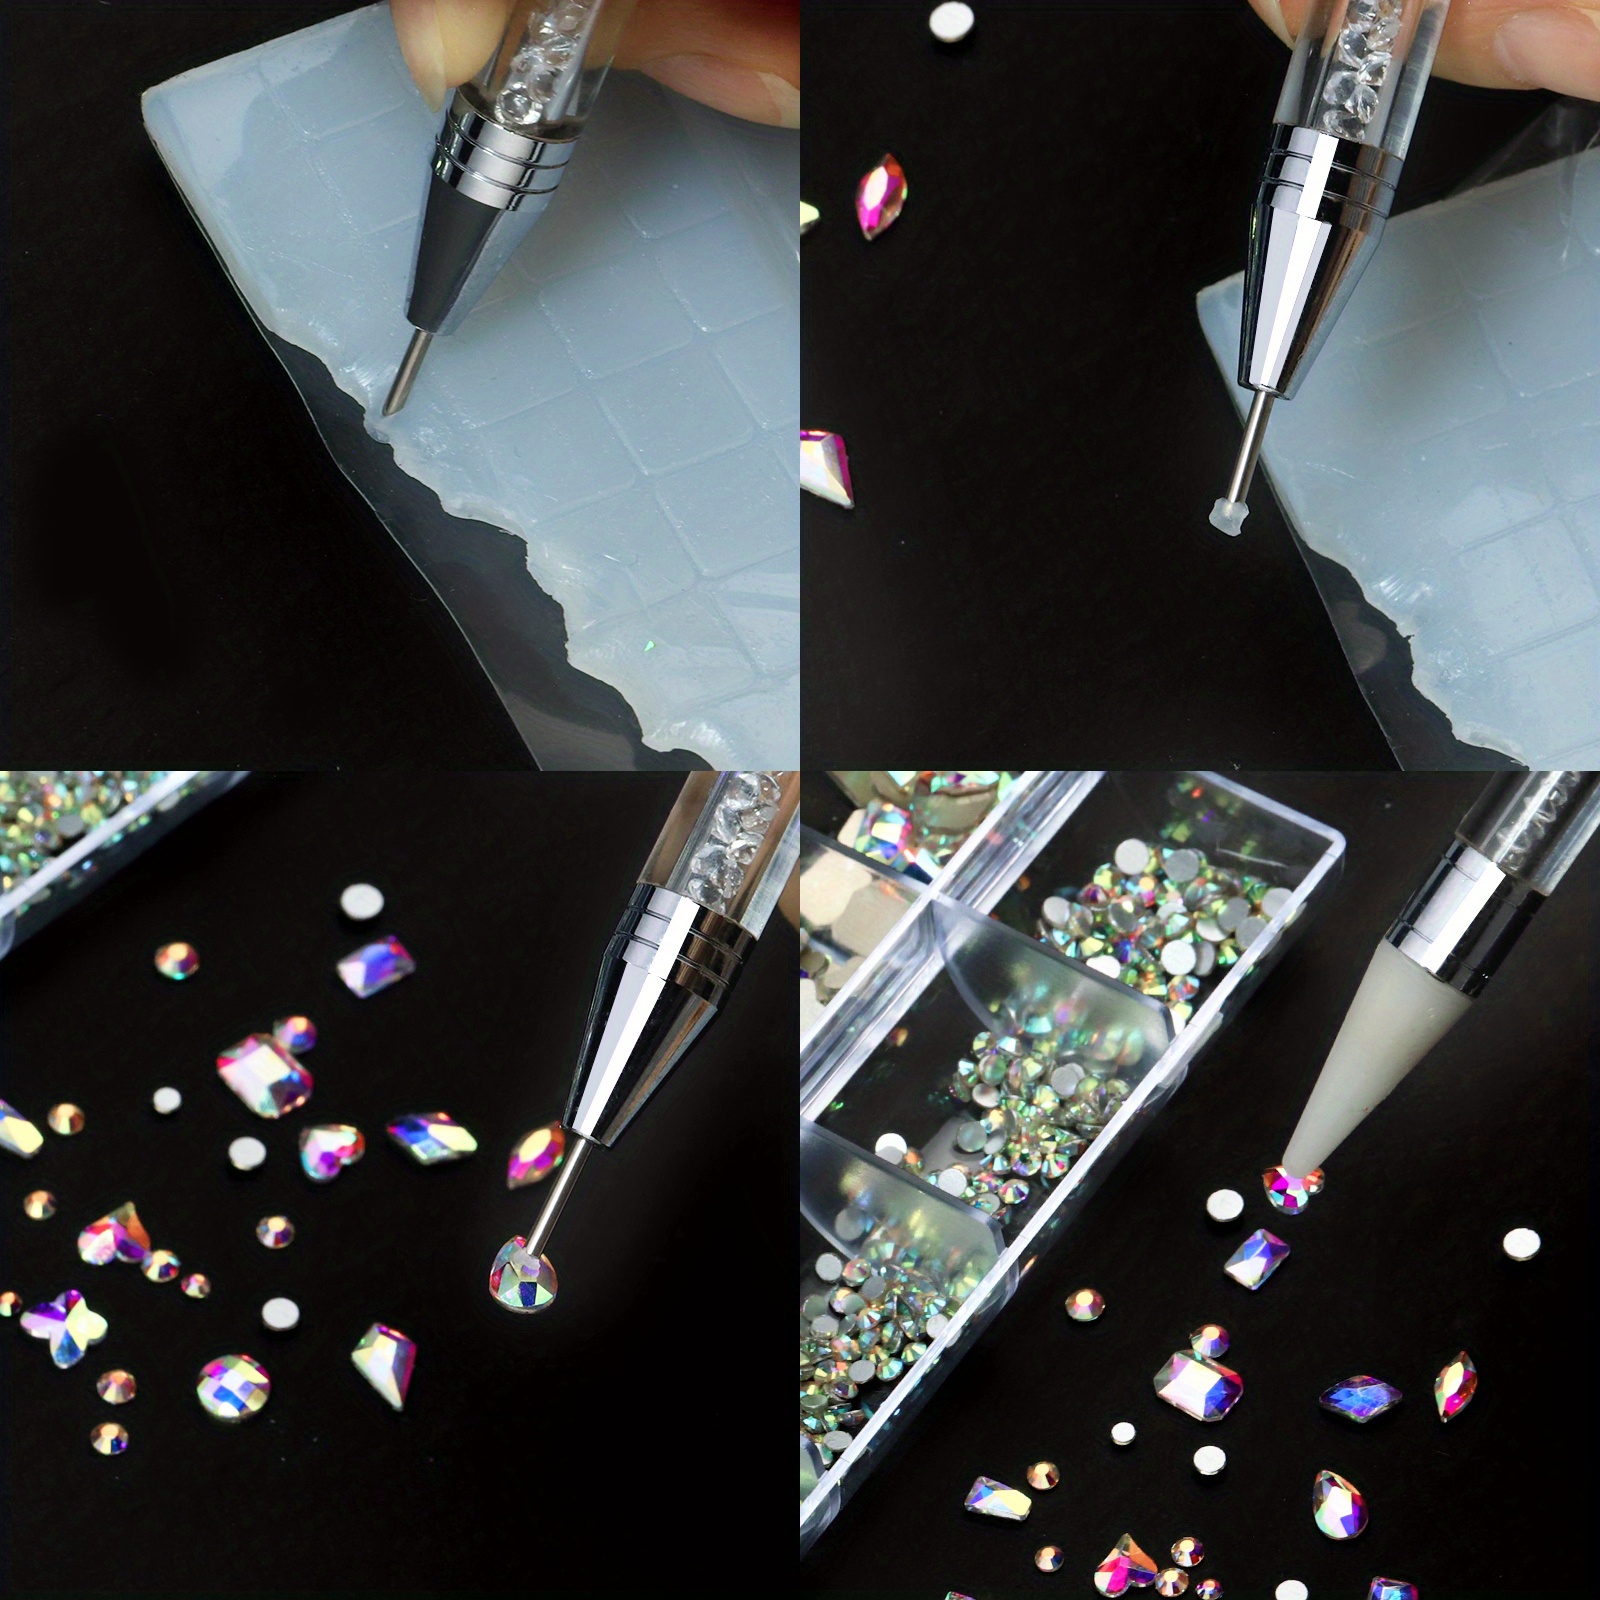 Lot Mixed Shapes Crystal Ab Flat Back Nail Art Crystal - Temu